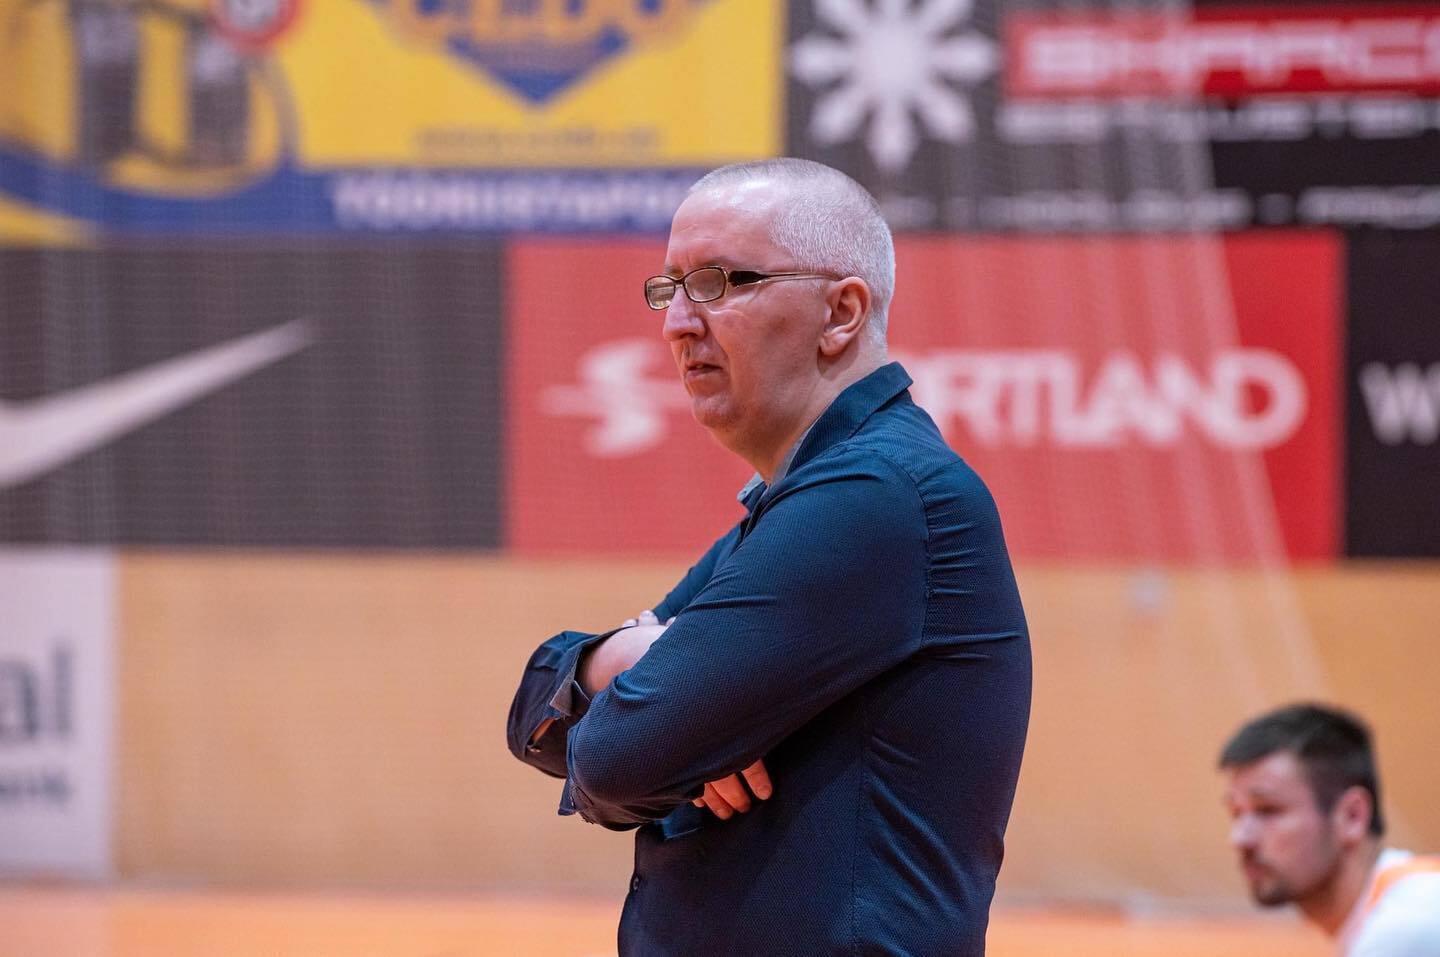 "Борется за свободу всех нас": сербский тренер присягнул на верность Путину. Его выгнали из эстонской команды